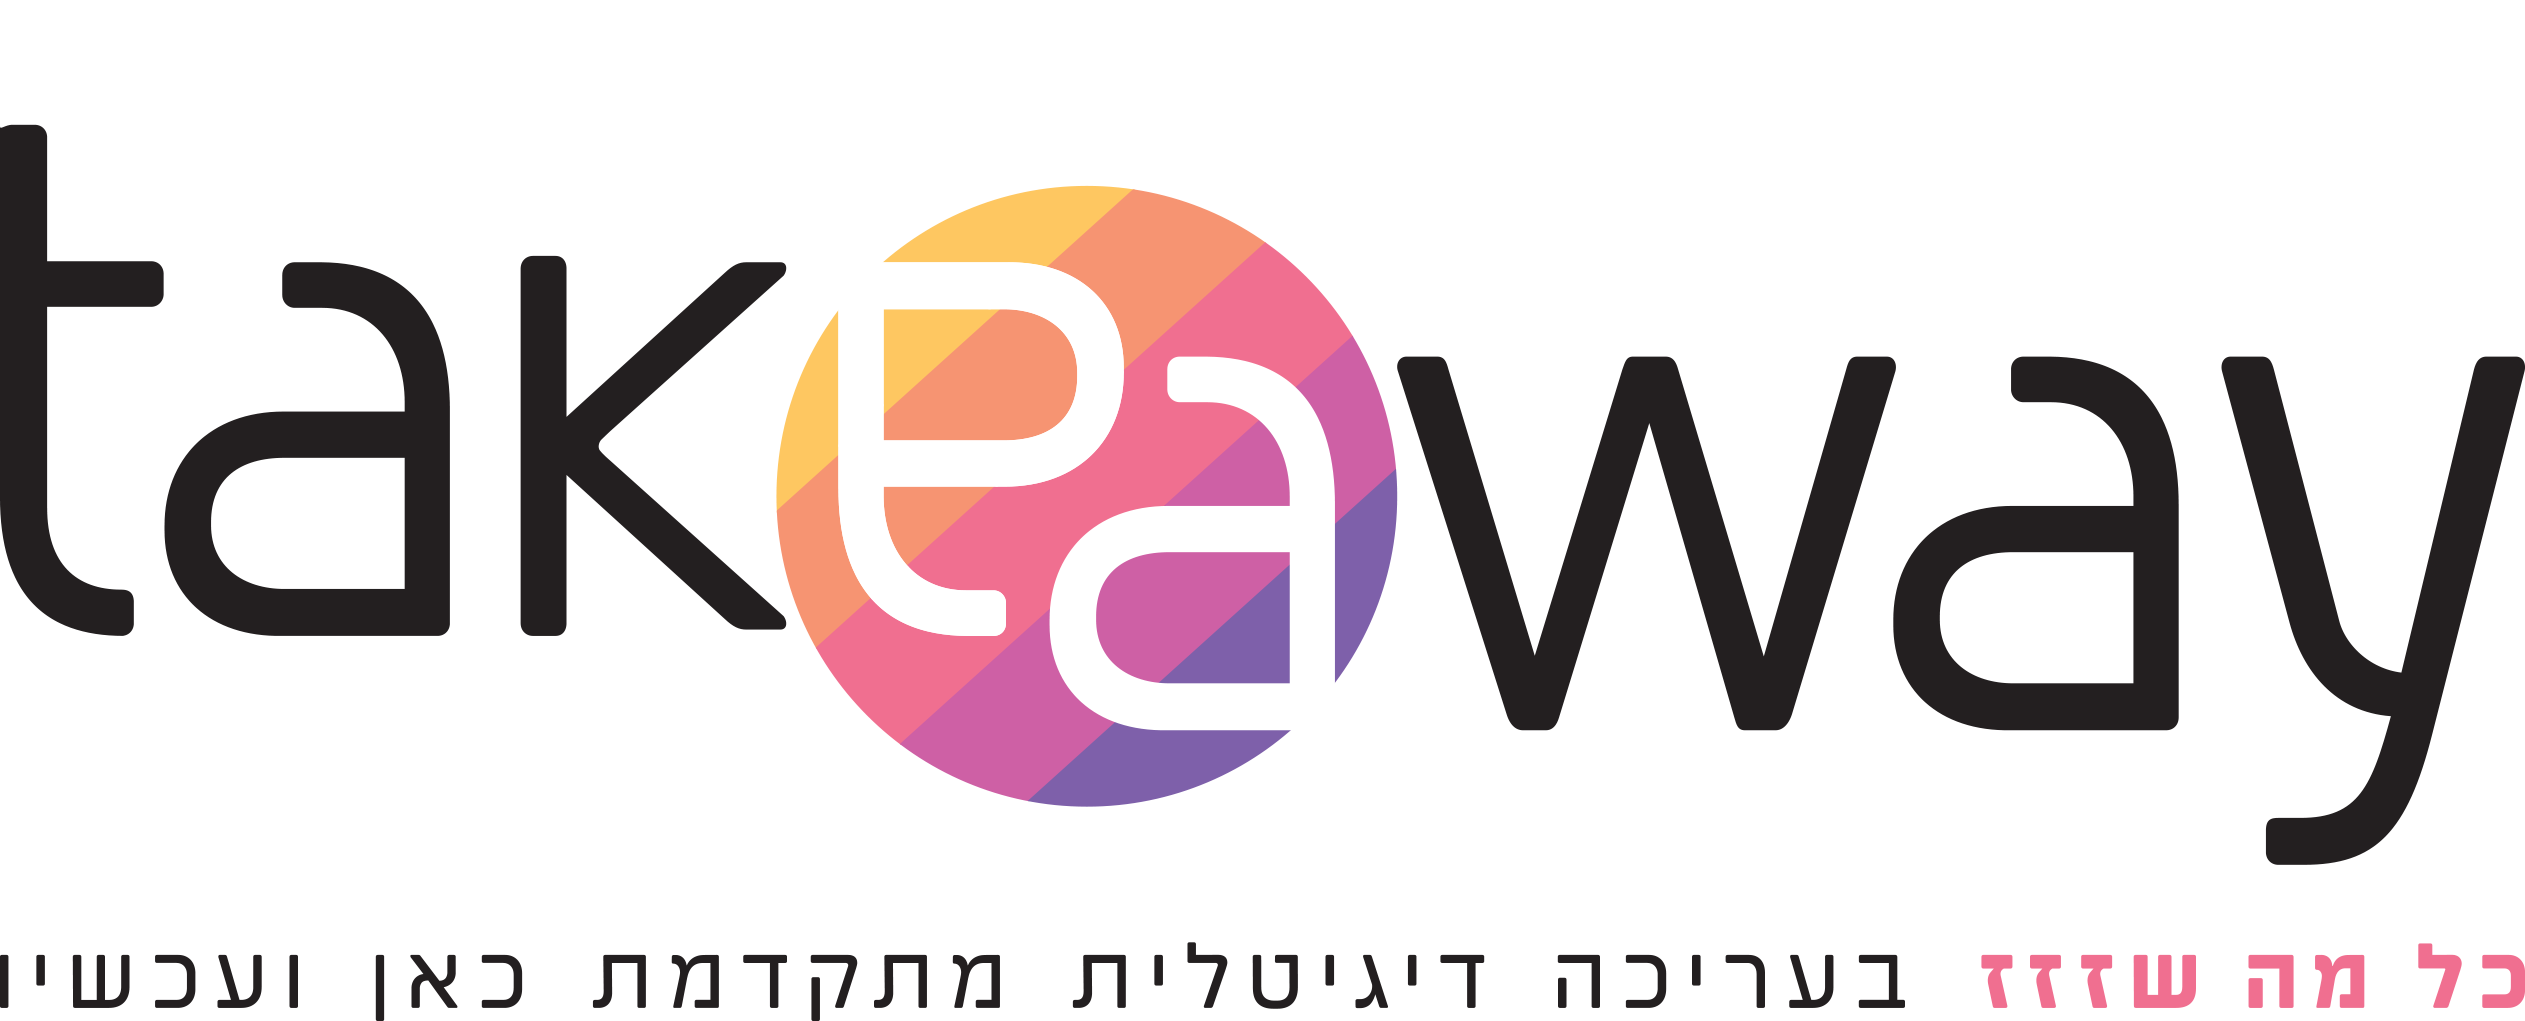 takeaway logo.png